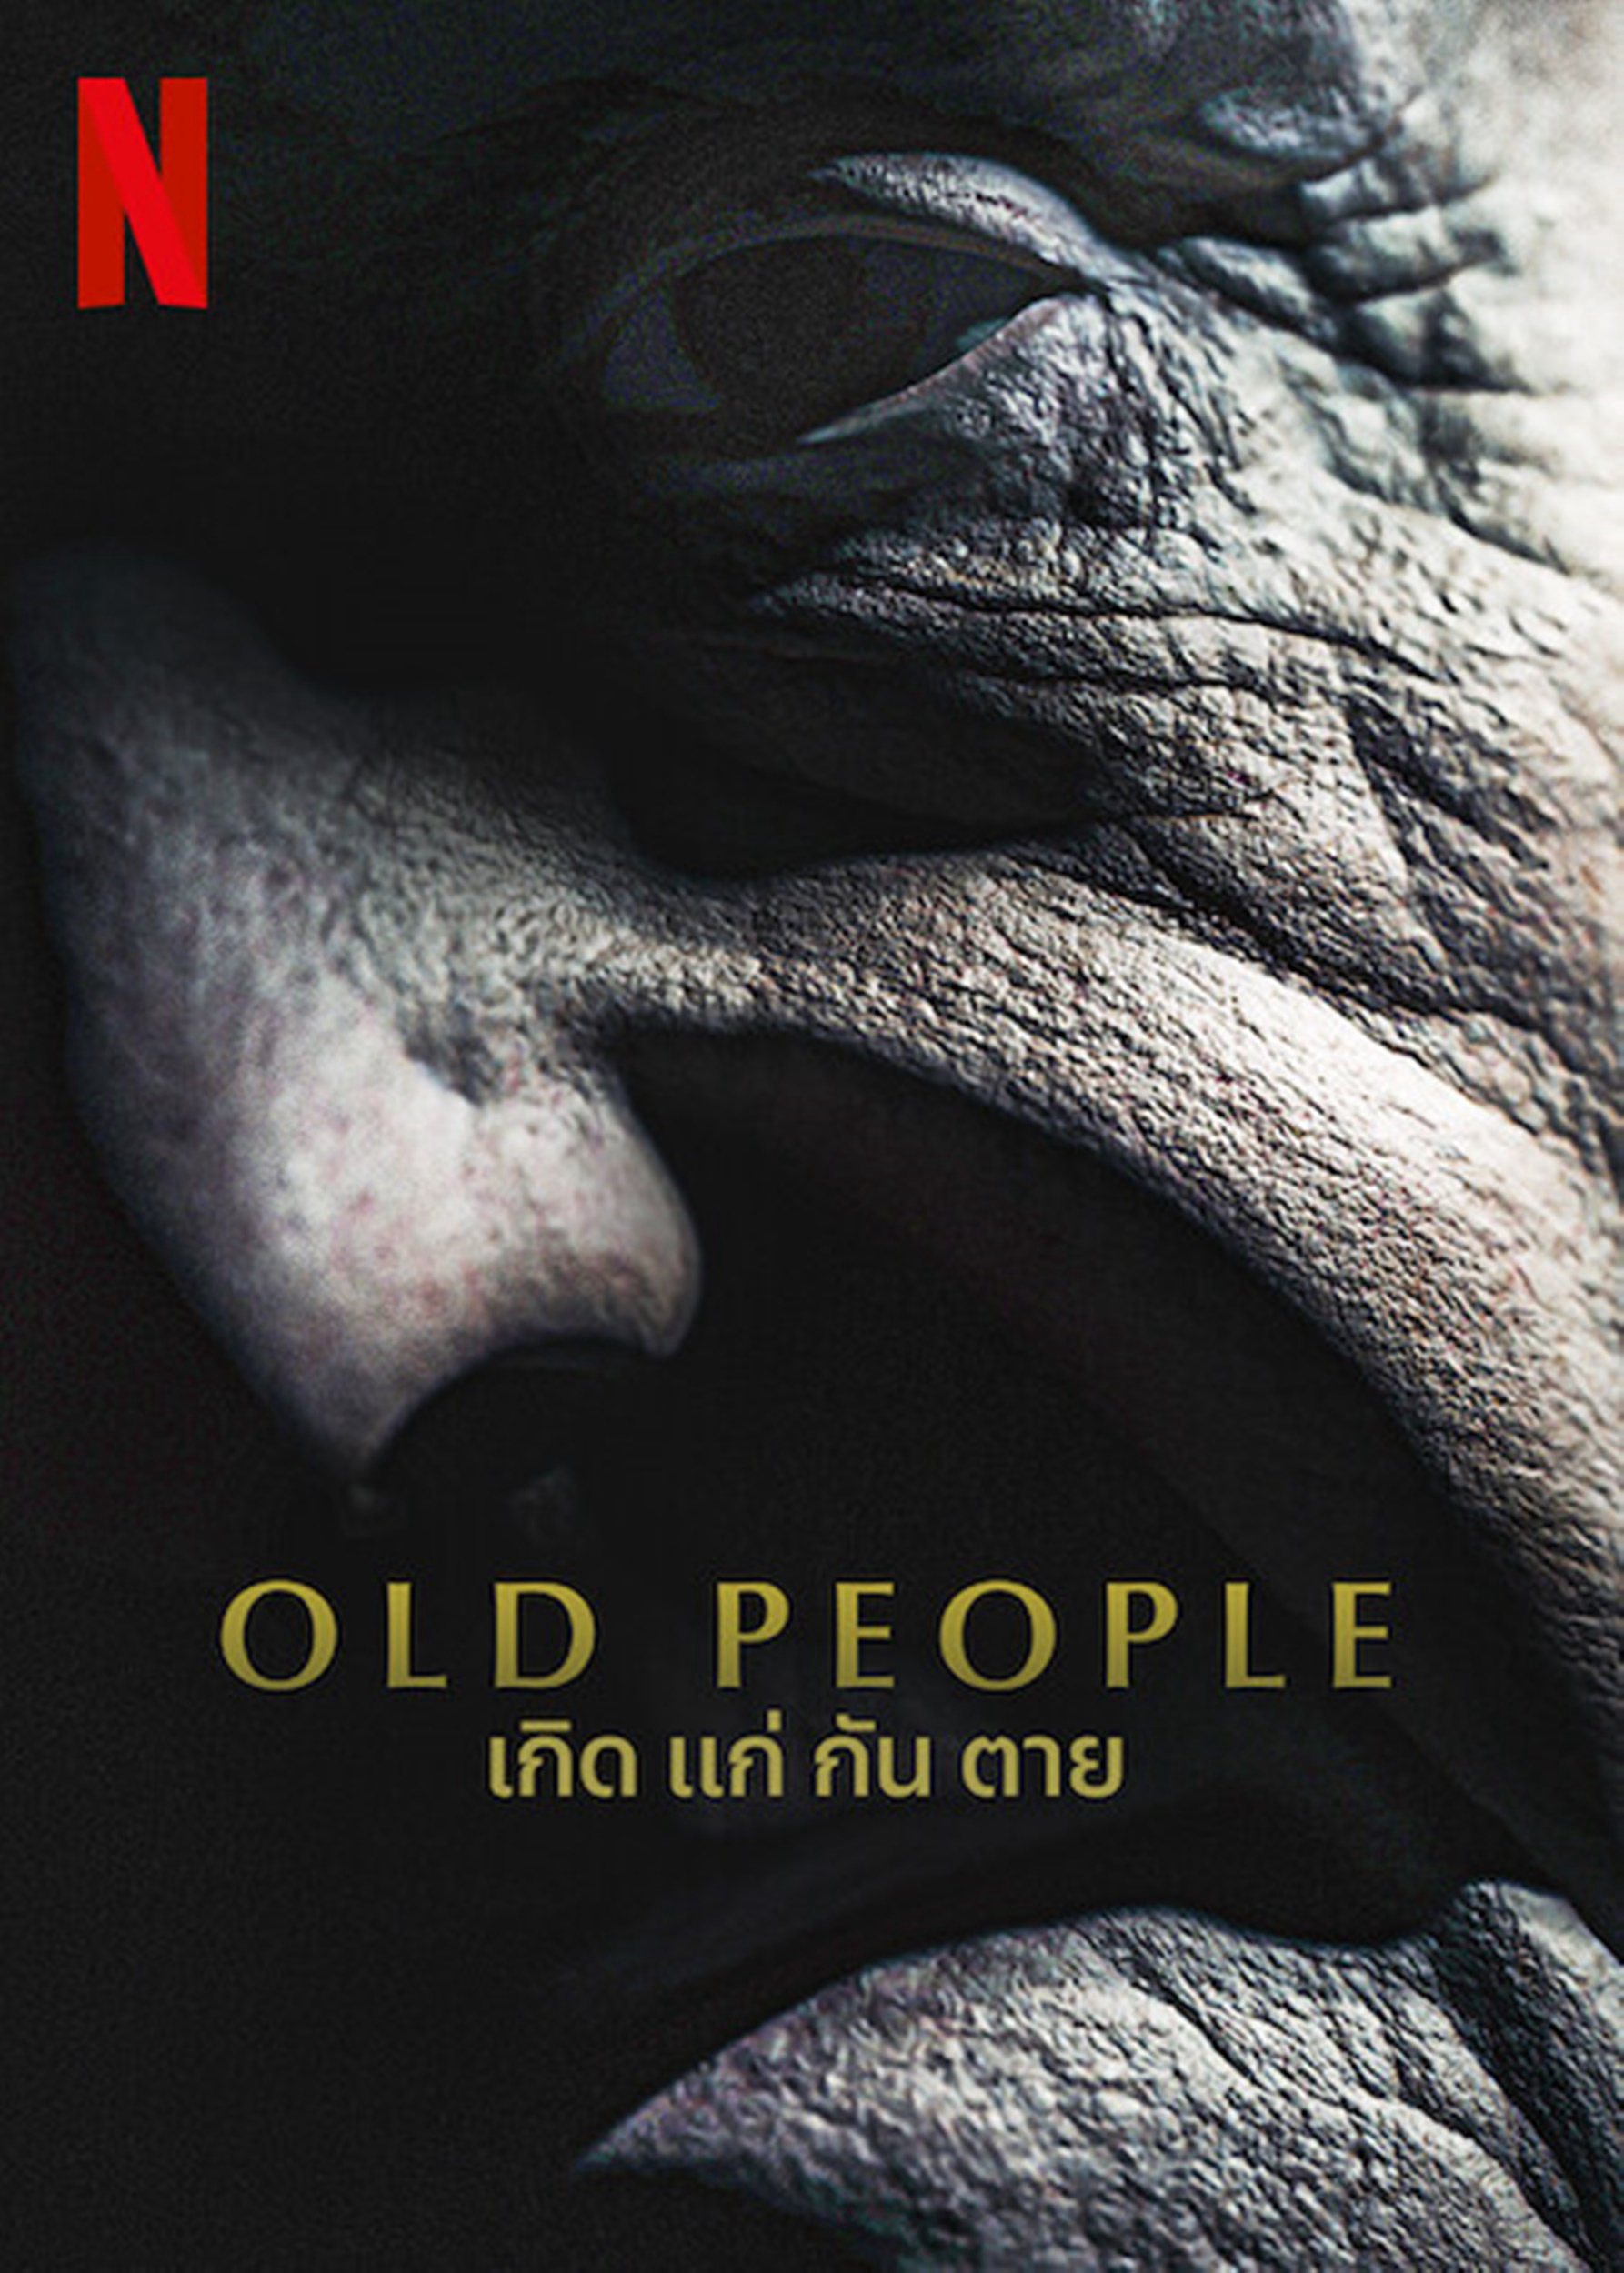 Xem Phim Làng lão niên (Old People)